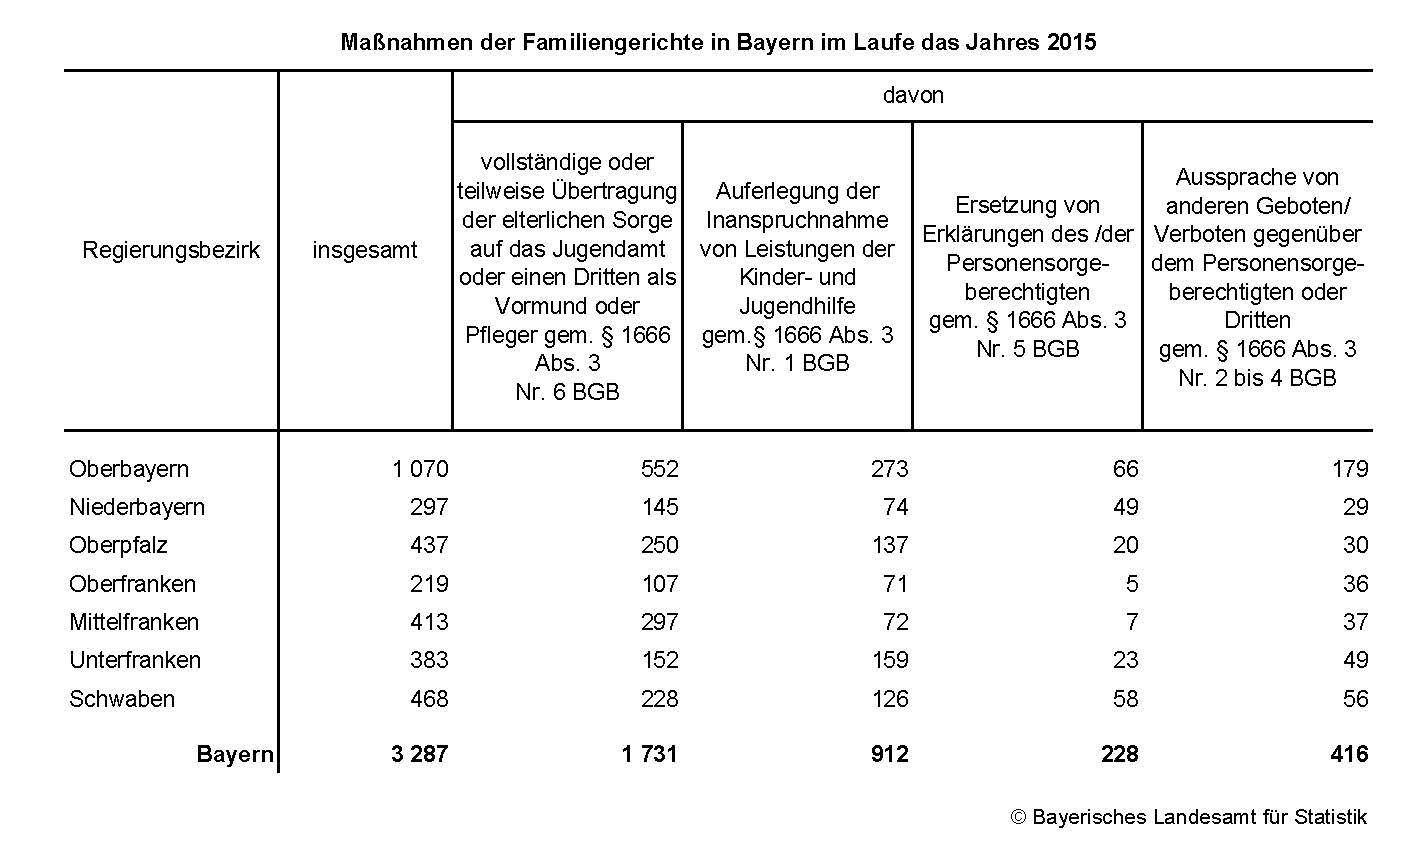 Maßnahmen der Familiengerichte in Bayern im Laufe das Jahres 2015